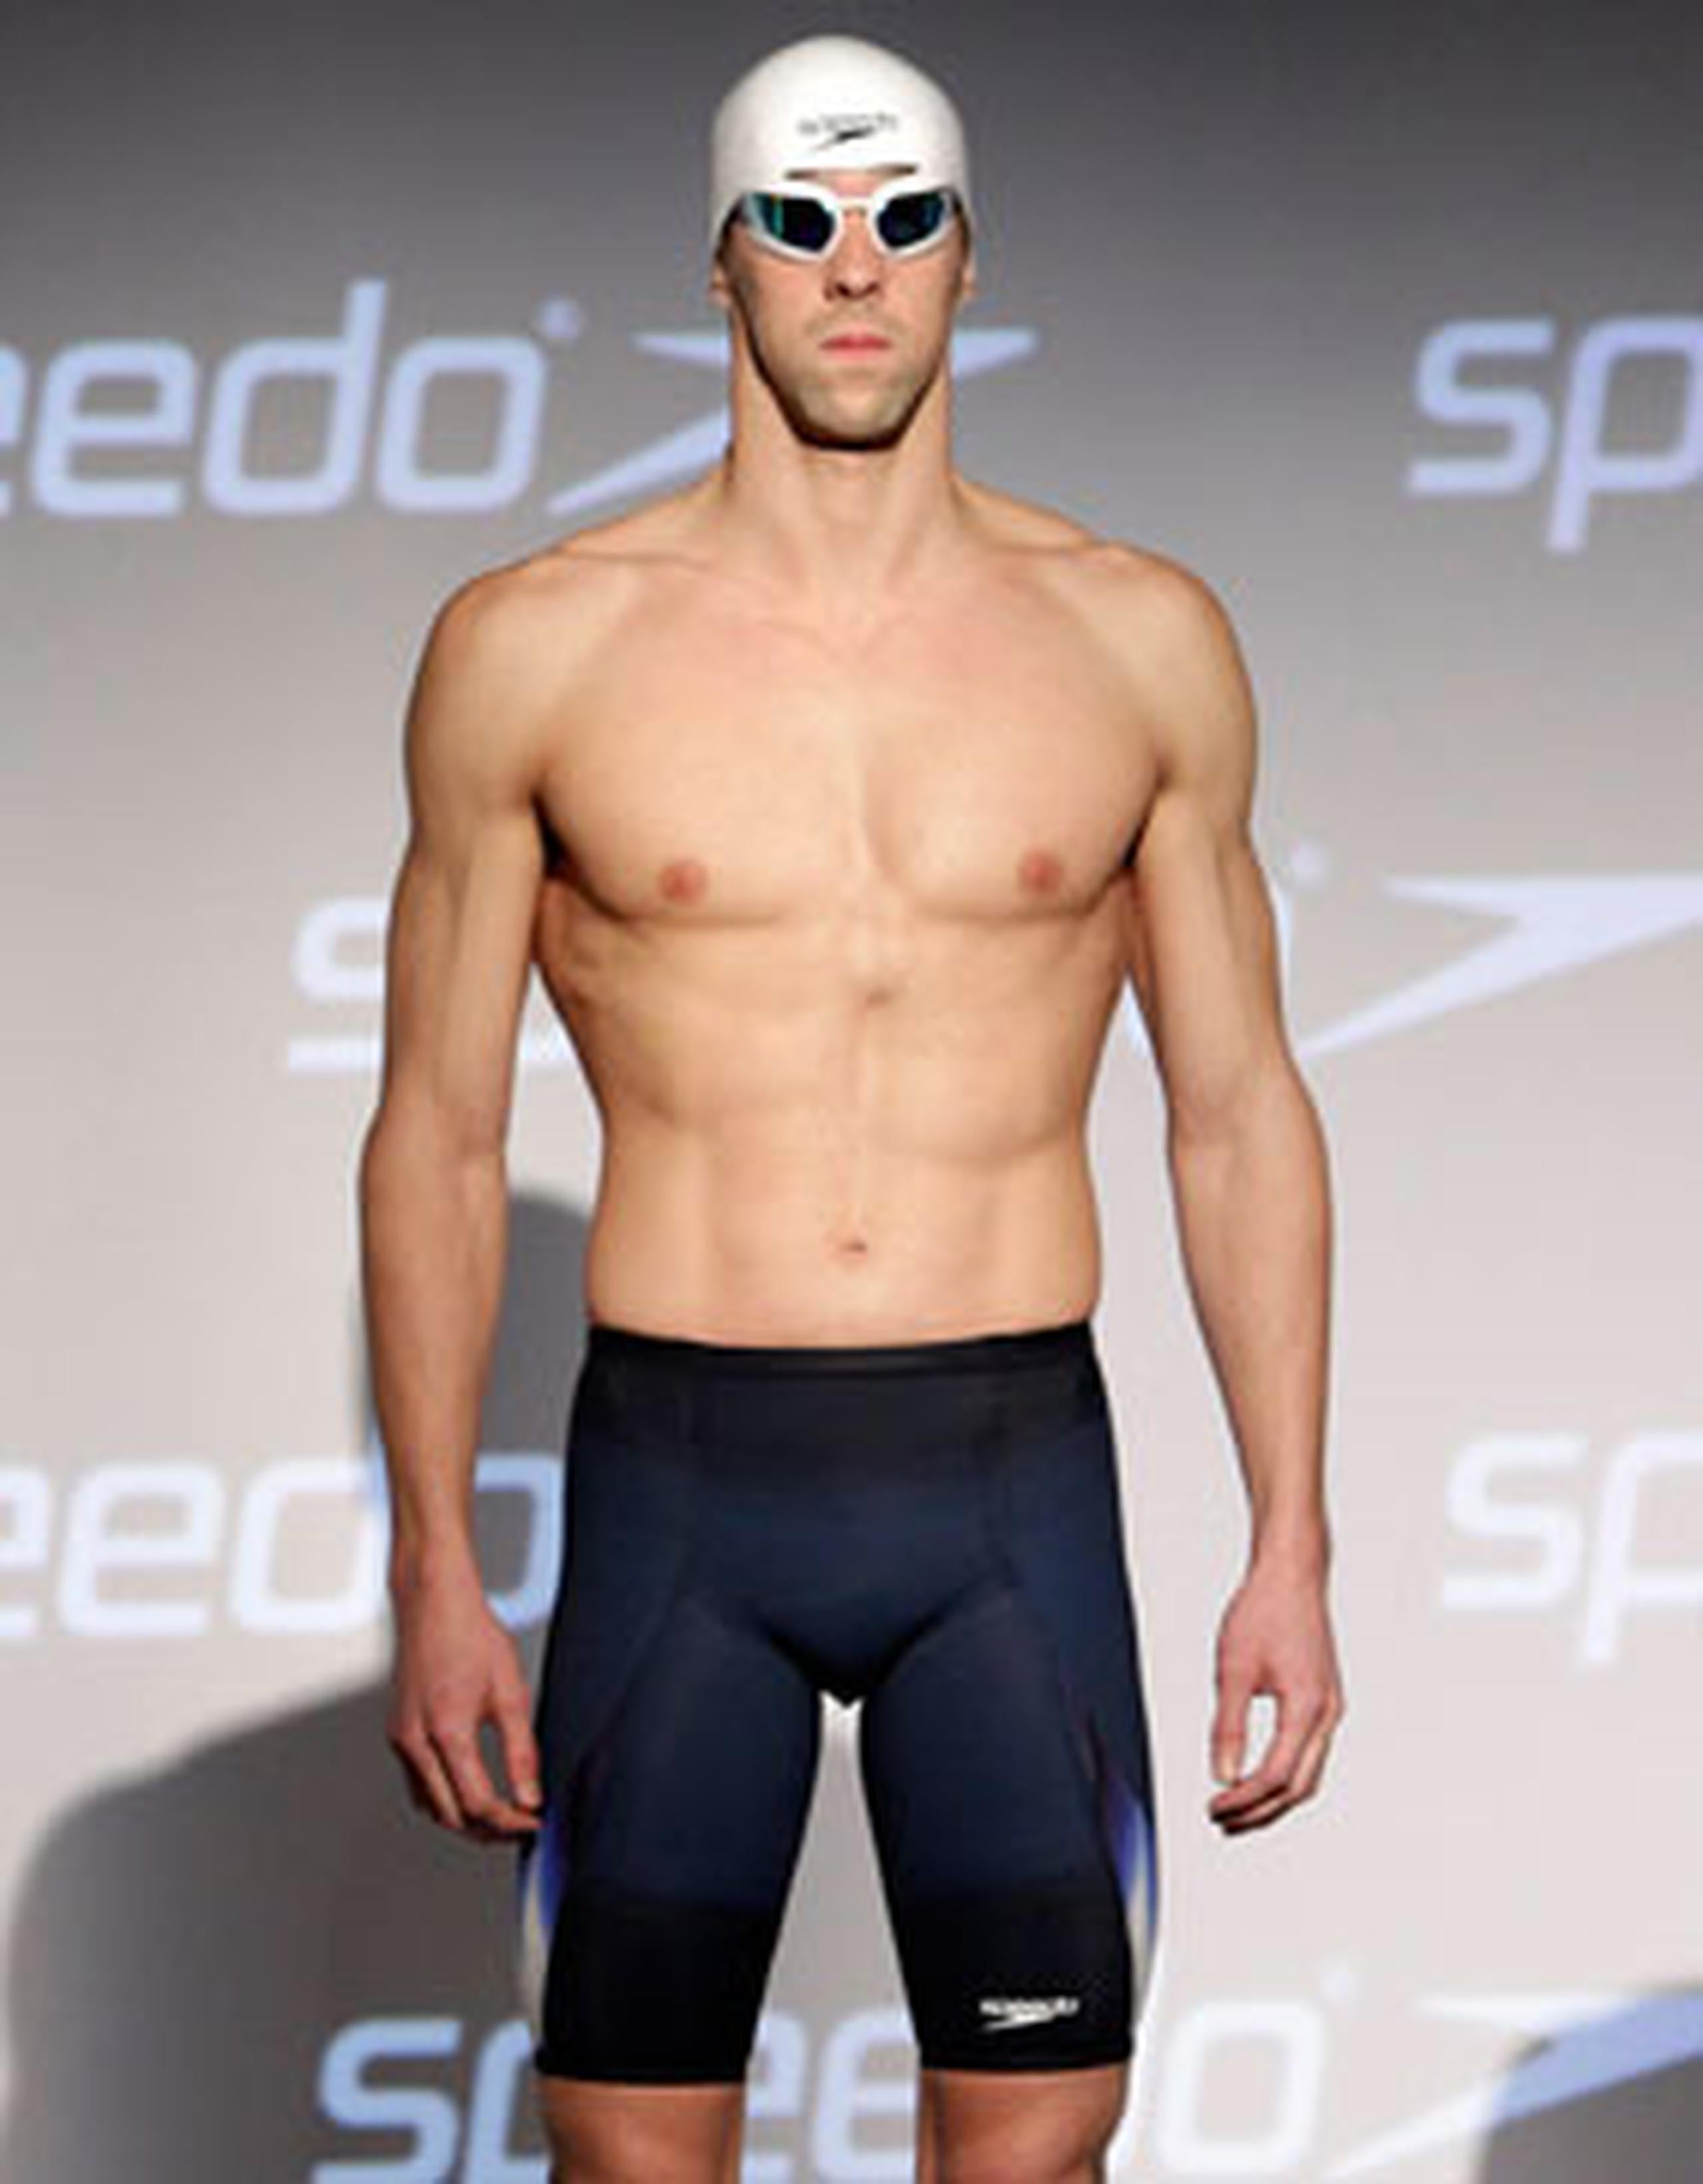 peso cirujano Orbita Nuevo traje de baño de Michael Phelps lo hace sentir "un torpedo" - Primera  Hora